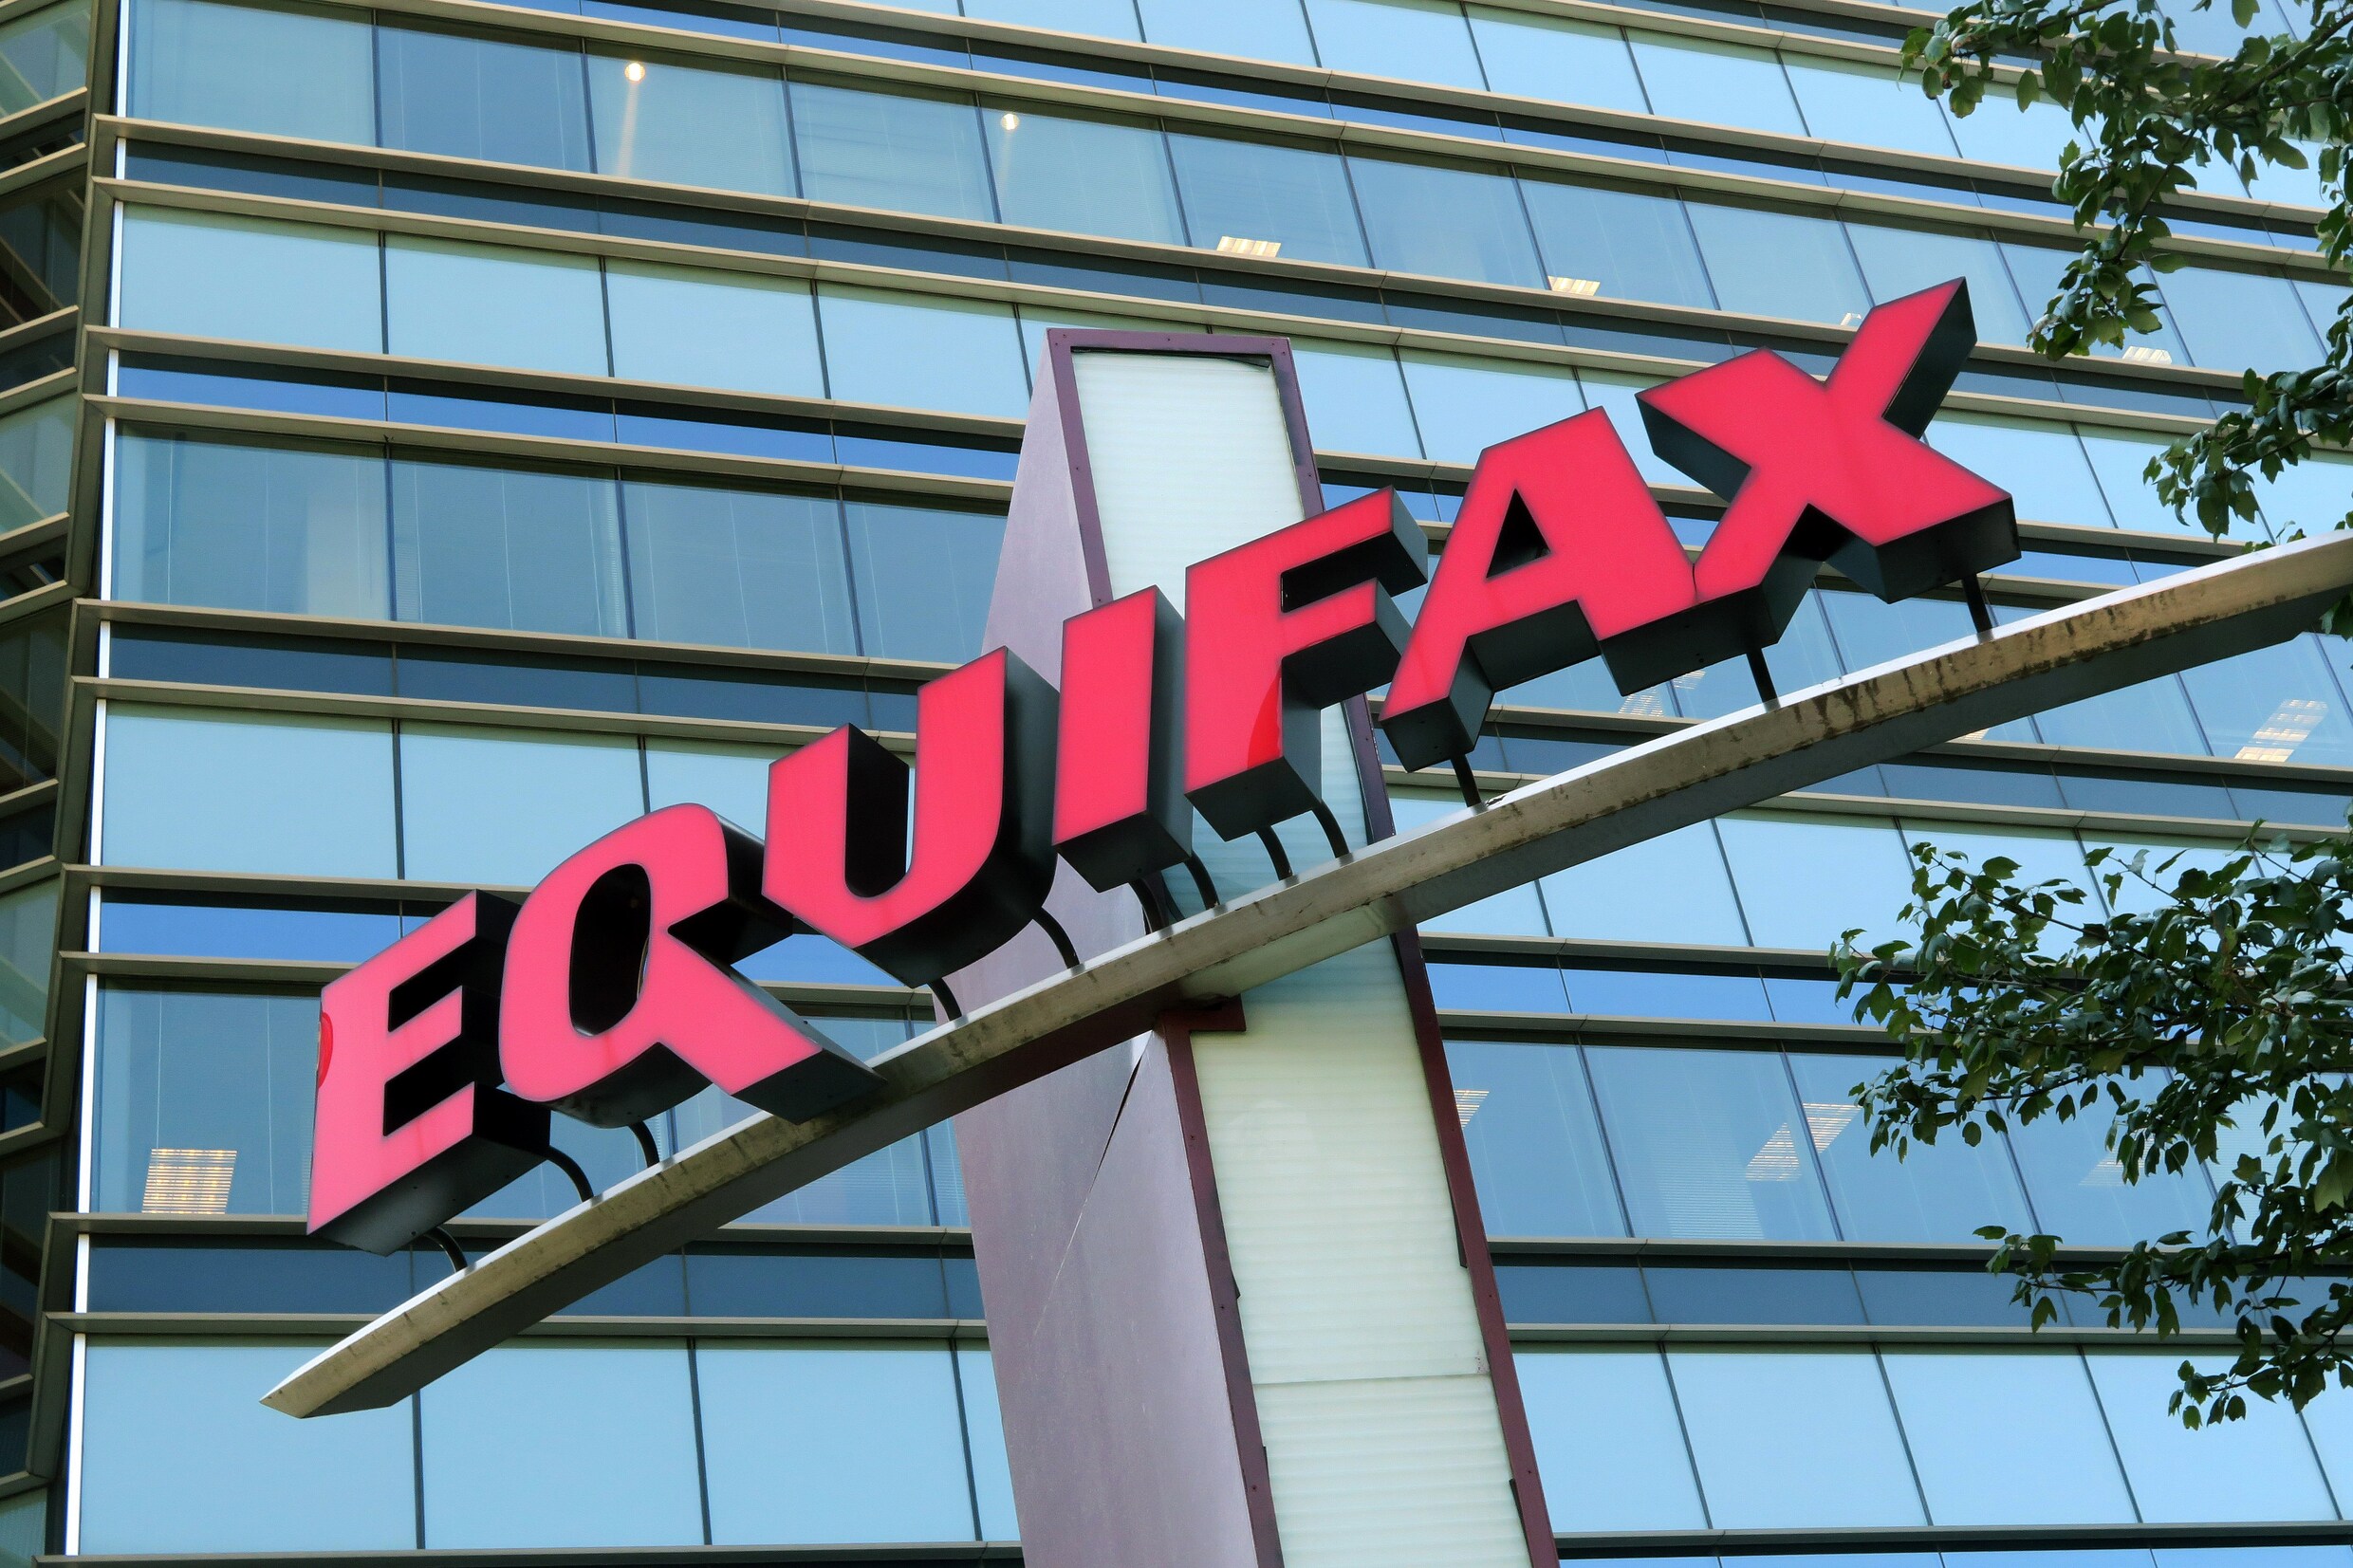 Na datalek 143 miljoen Amerikanen raakt Equifax dieper in de problemen